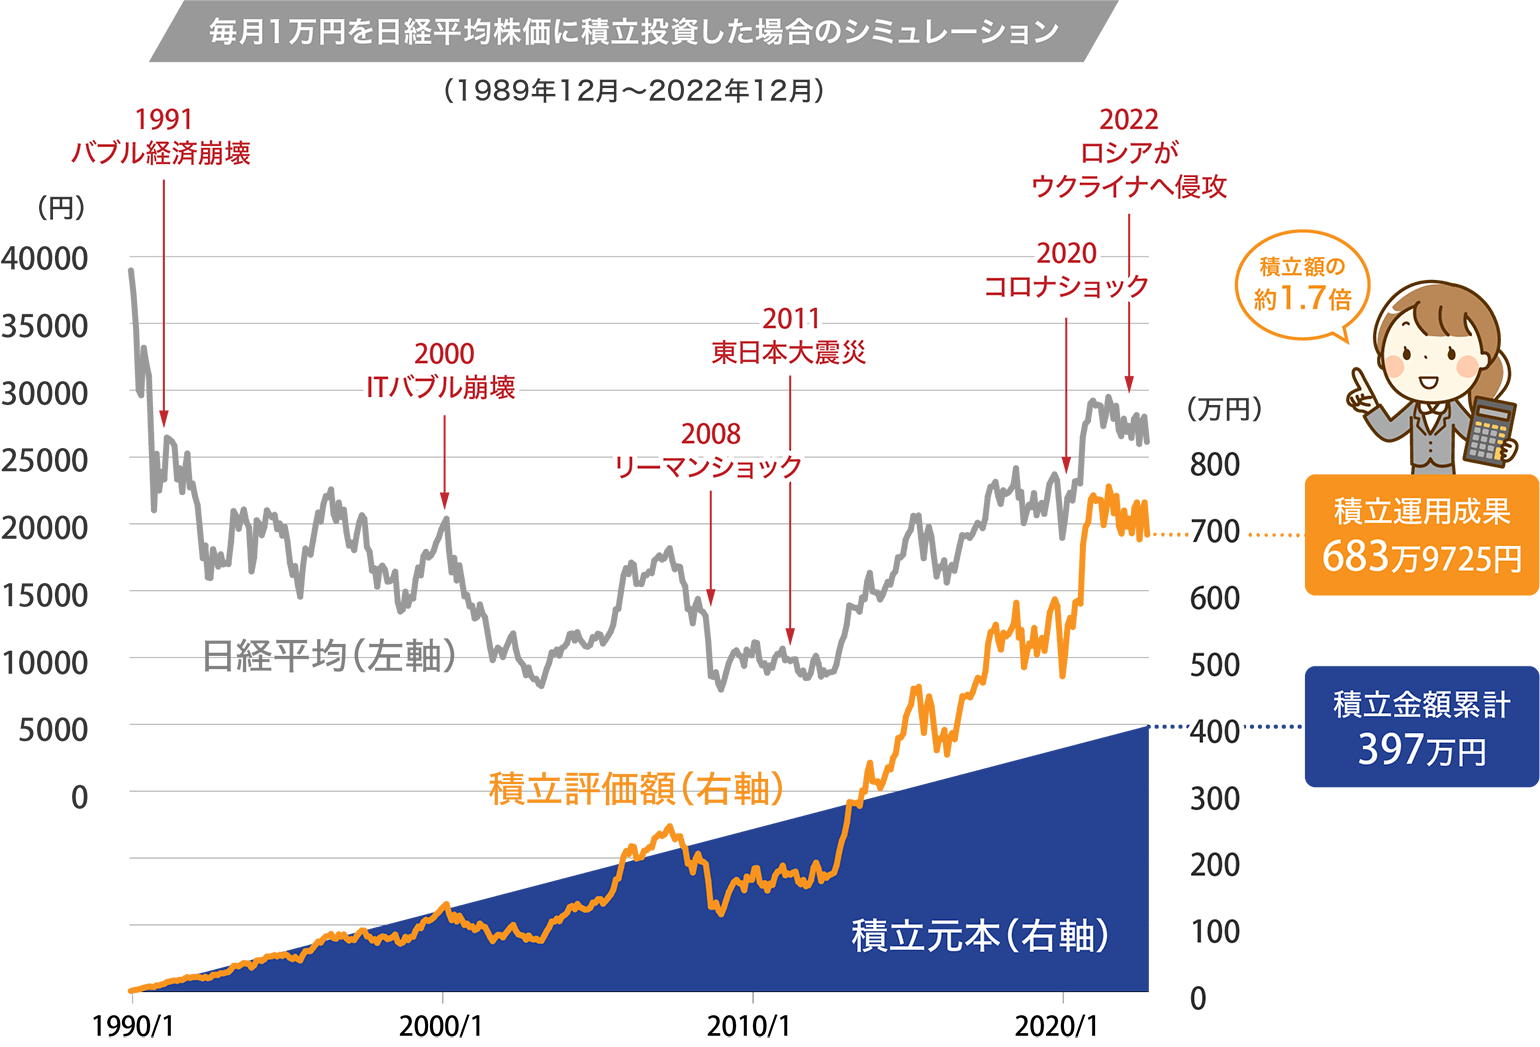 毎月1万円を日経平均株価に積み立て投資した場合のシミュレーション